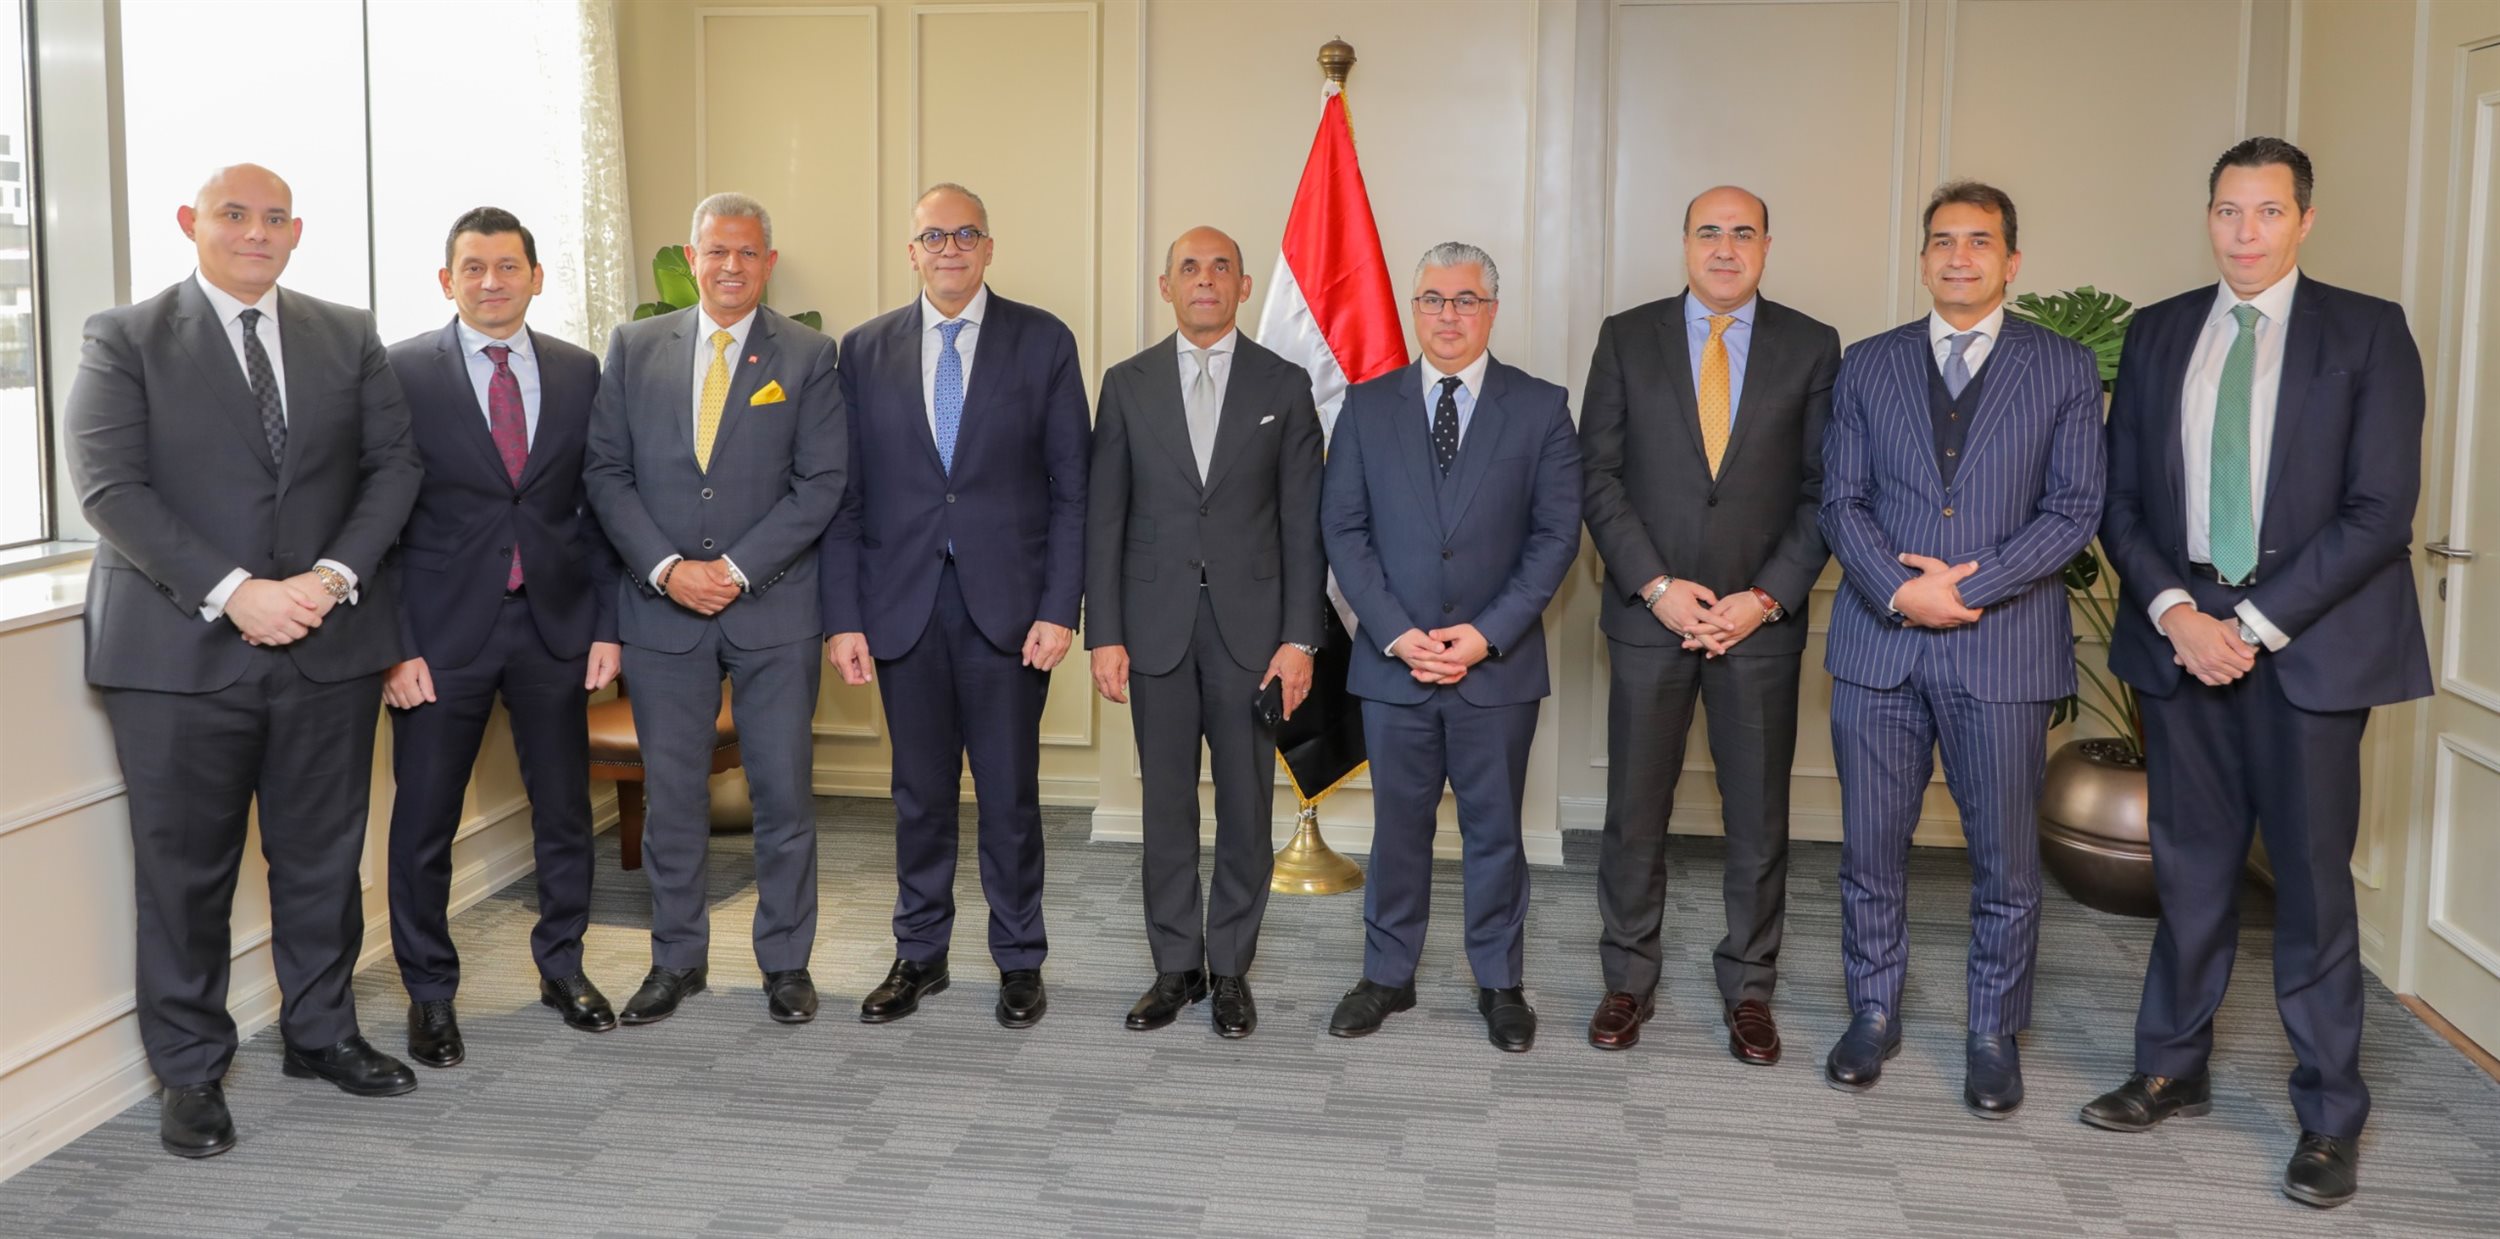 اقتصادية قناة السويس توقع بروتوكول تعاون مع بنك القاهرة